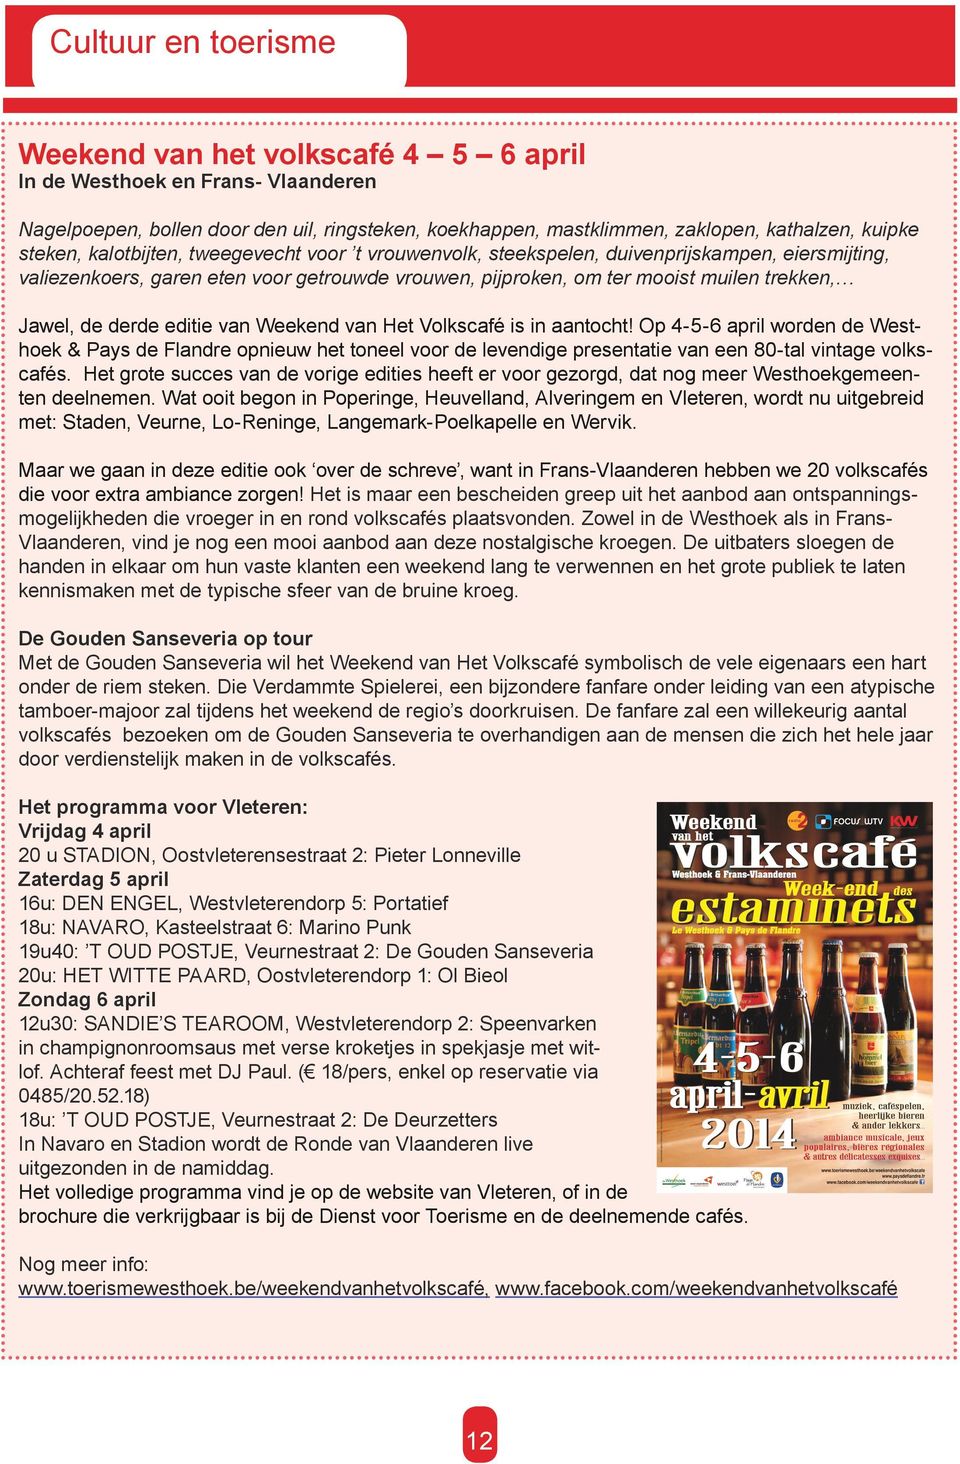 derde editie van Weekend van Het Volkscafé is in aantocht! Op 4-5-6 april worden de Westhoek & Pays de Flandre opnieuw het toneel voor de levendige presentatie van een 80-tal vintage volkscafés.